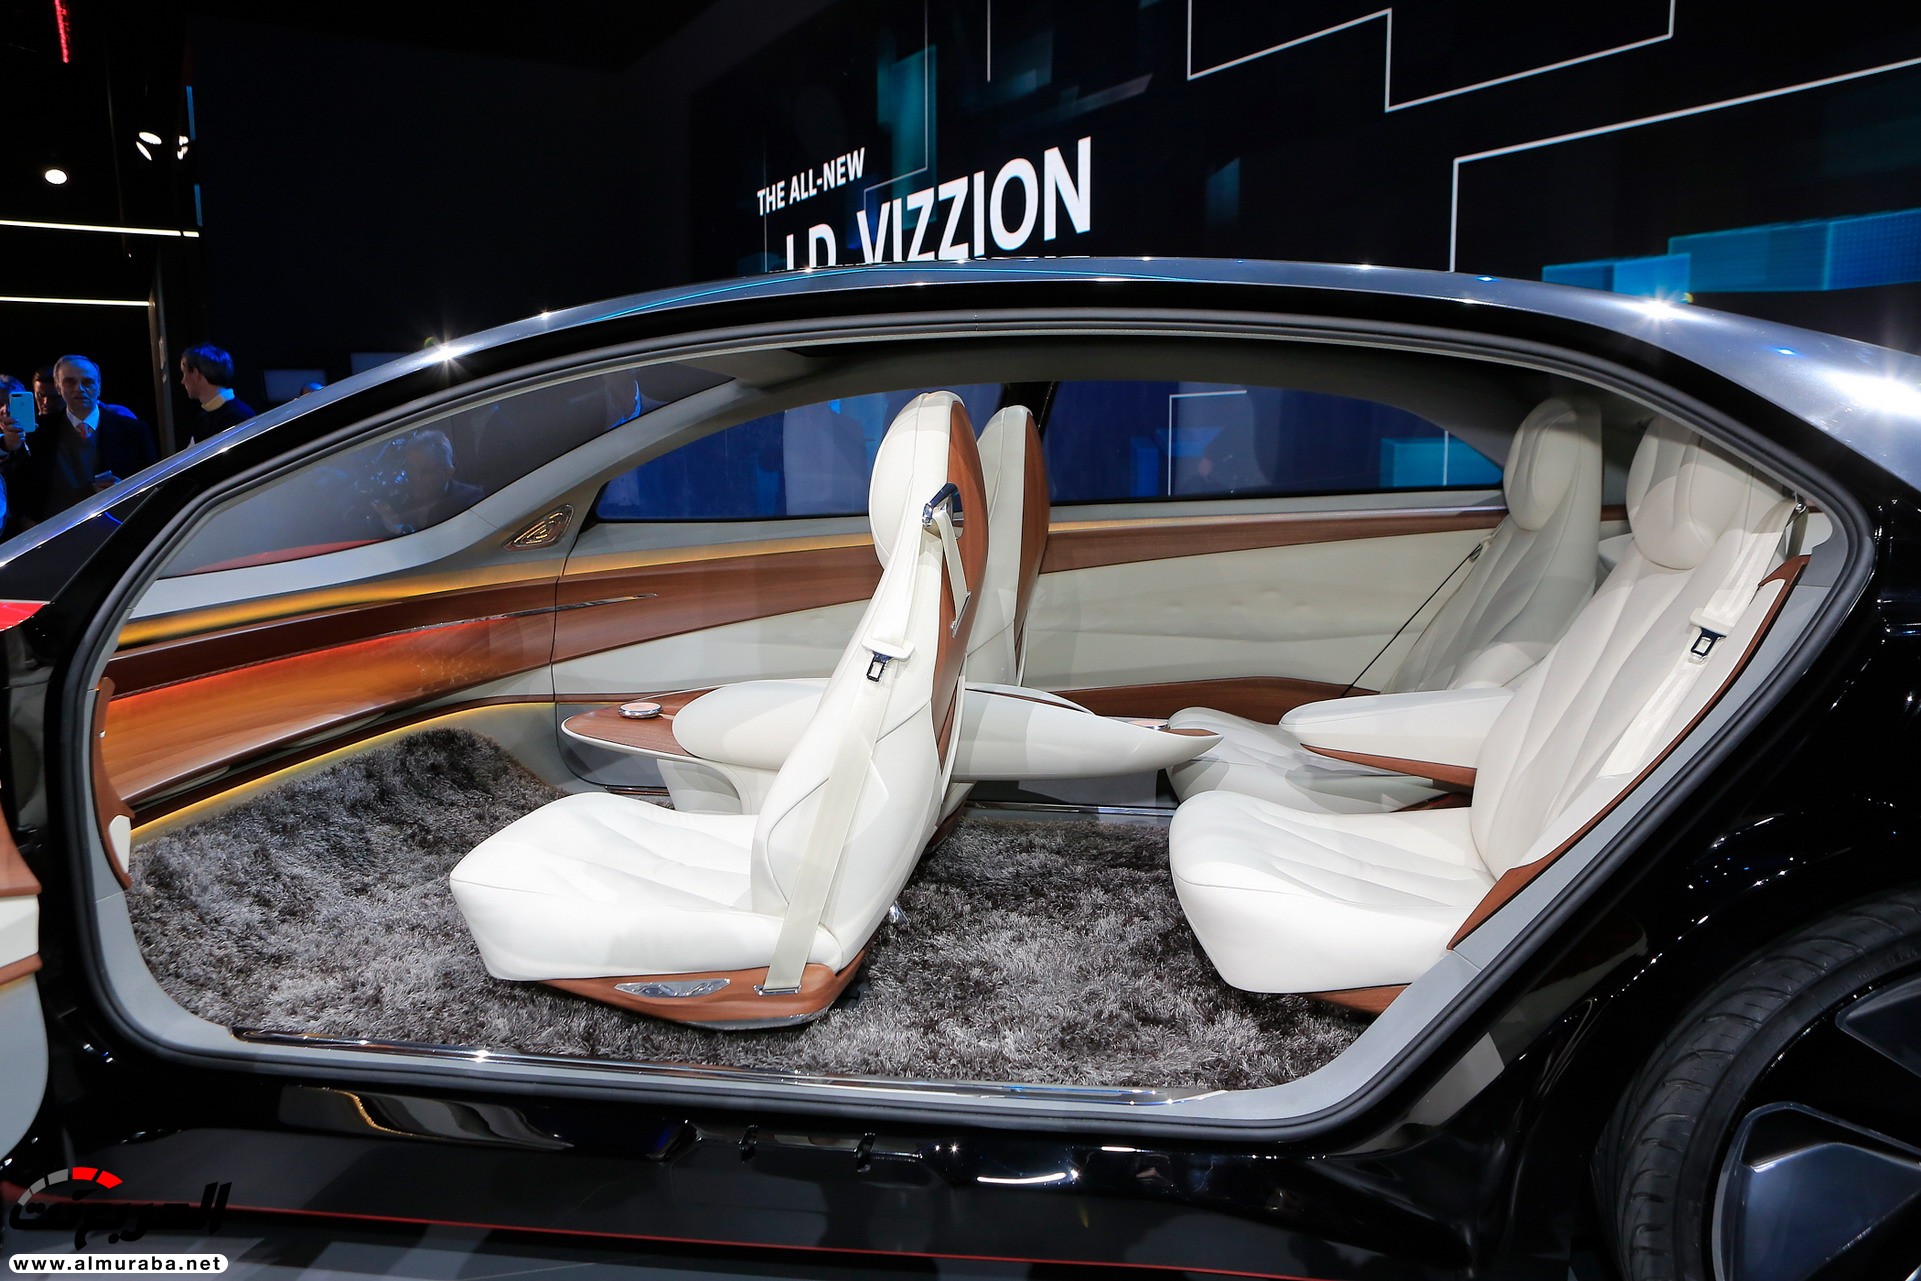 فولكس فاجن I.D Vizzion هي سيارة كهربائية ستكون بديلة طراز فايتون في المستقبل 15